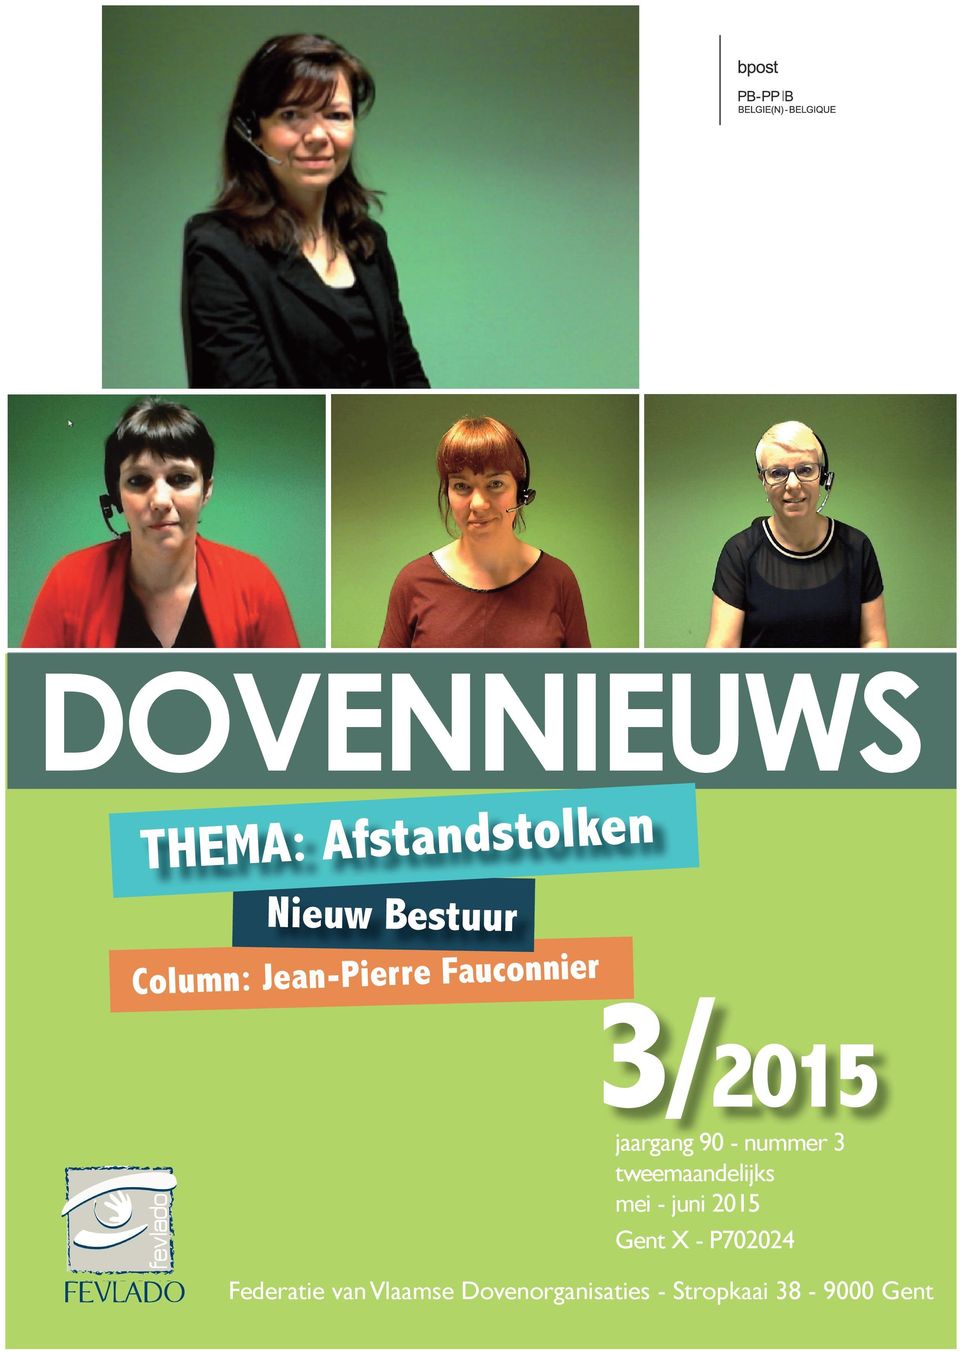 tweemaandelijks mei - juni 2015 Gent X - P702024